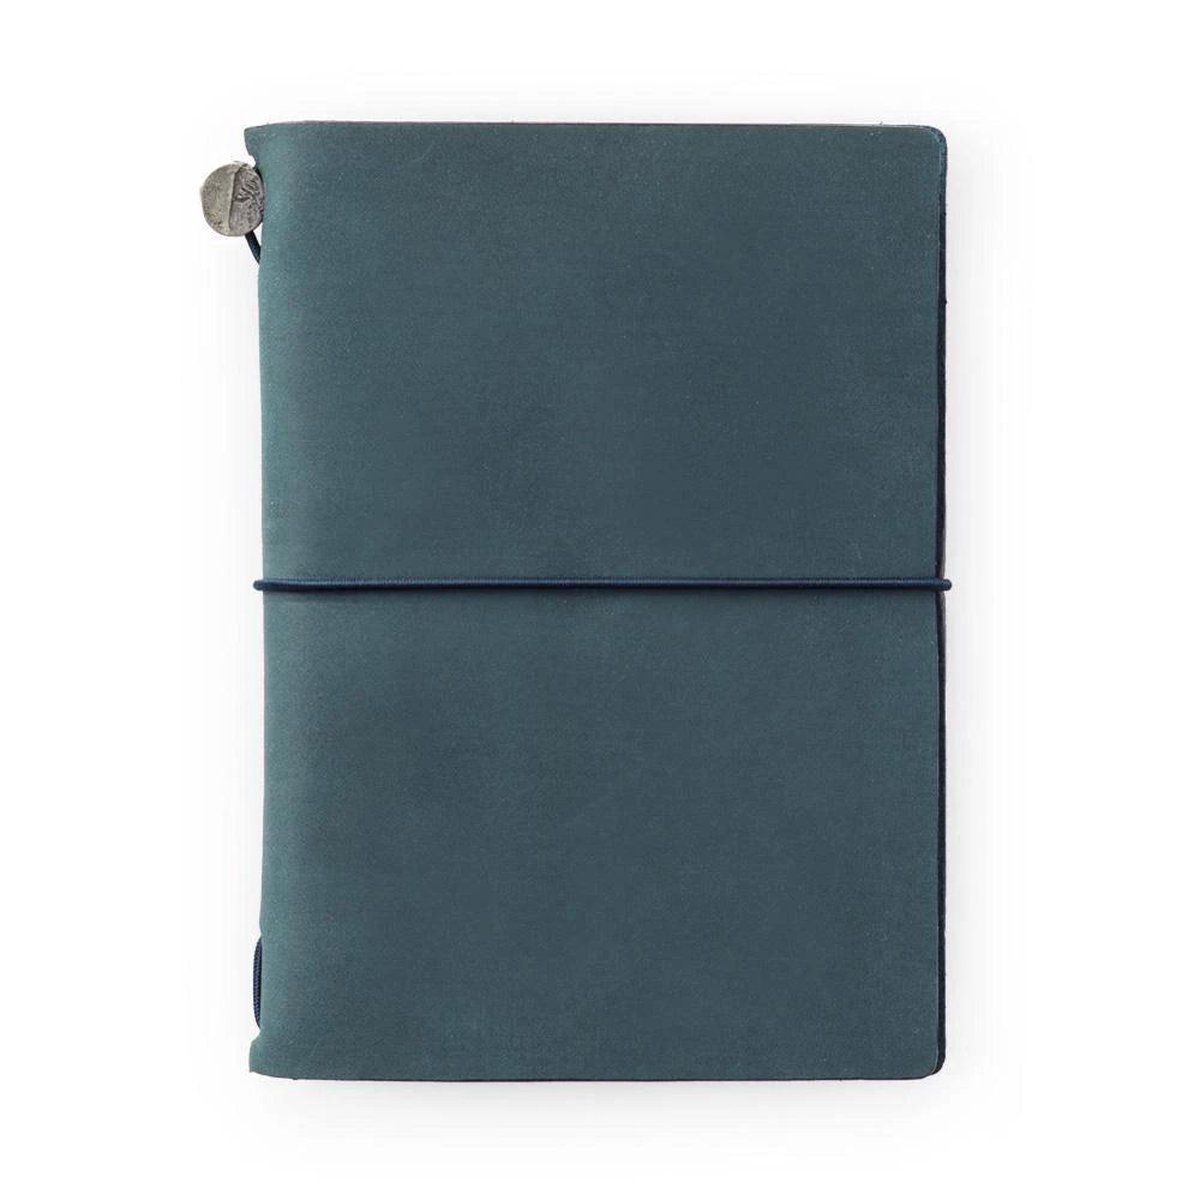 TRAVELER'S Notebook Passport Size - Blue